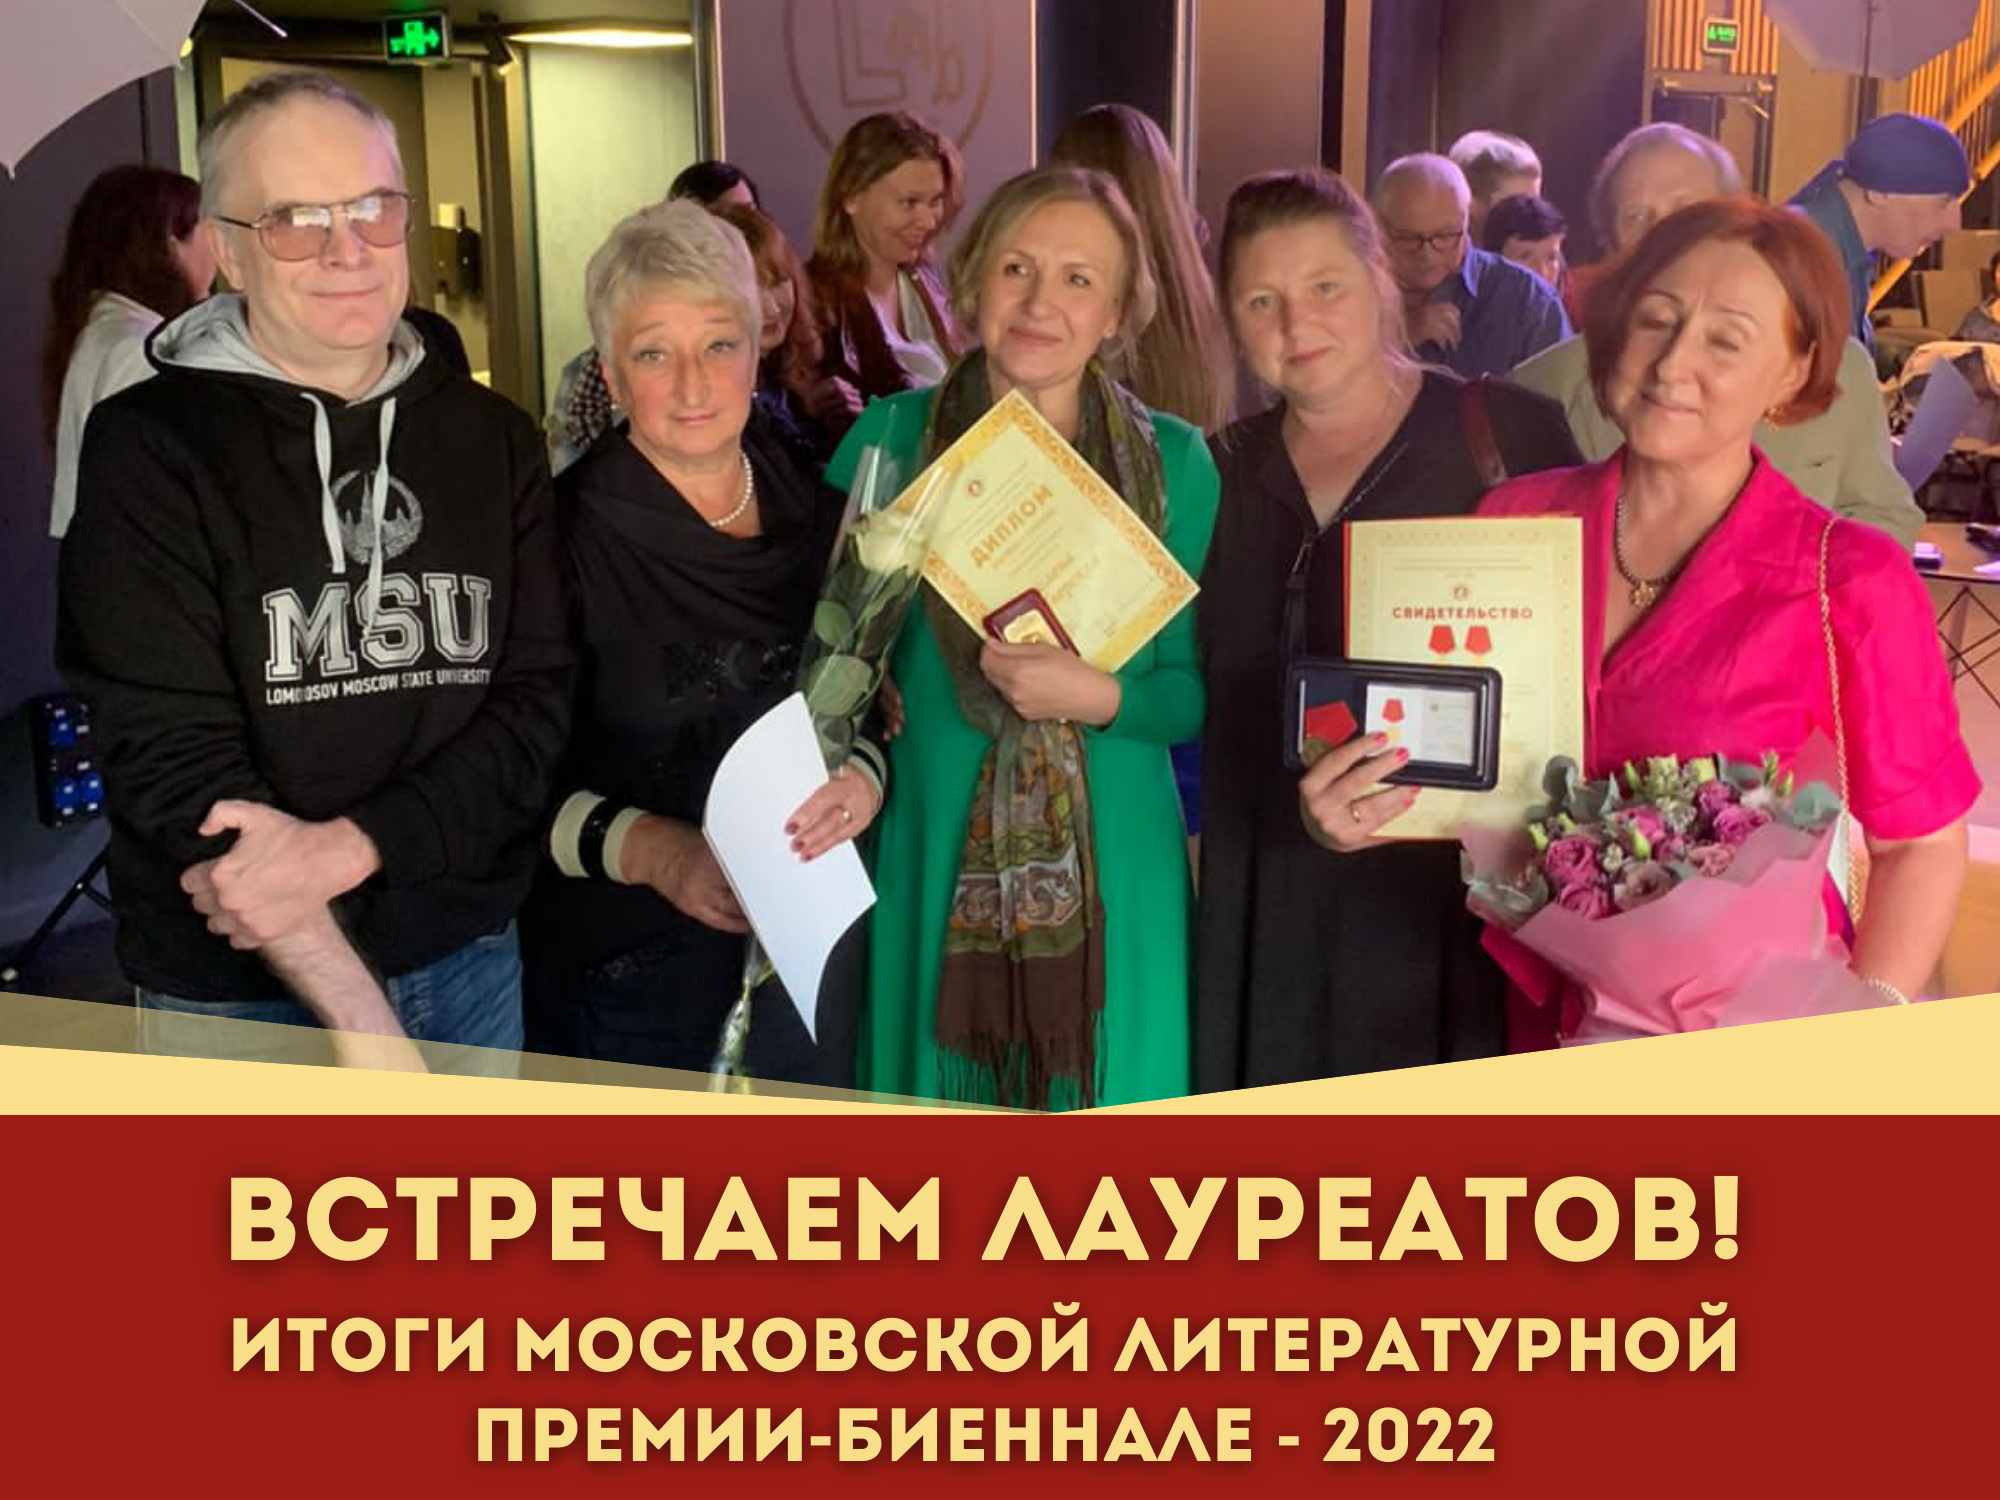 4 сентября состоялась церемония награждения лауреатов Московской литературной премии-биеннале – 2022